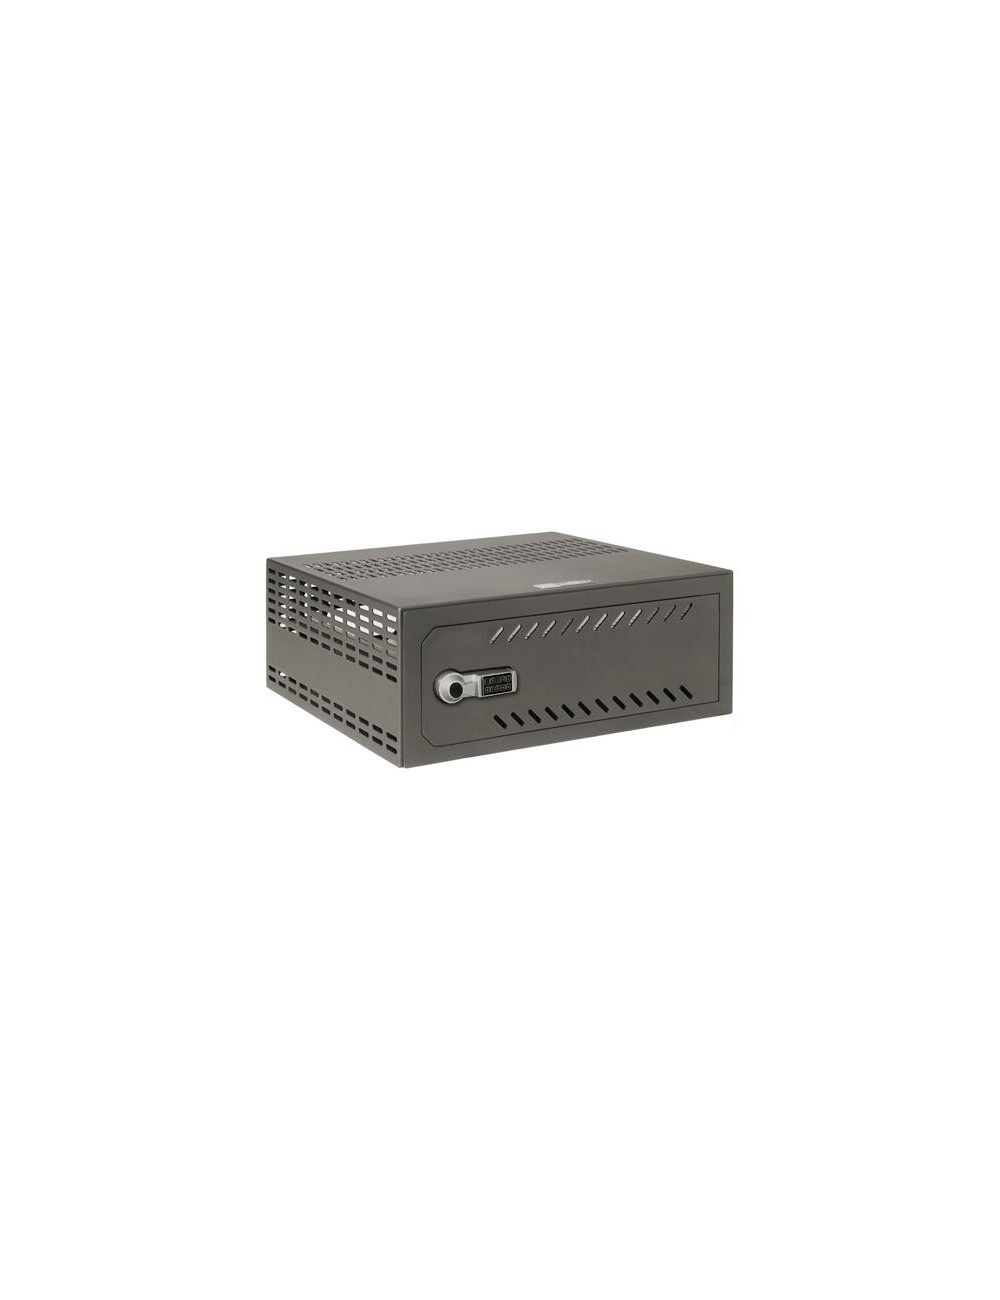 Cassaforte per DVR da 1,5 a 2U rack  Specifico per CCTV  chiusura eletronica